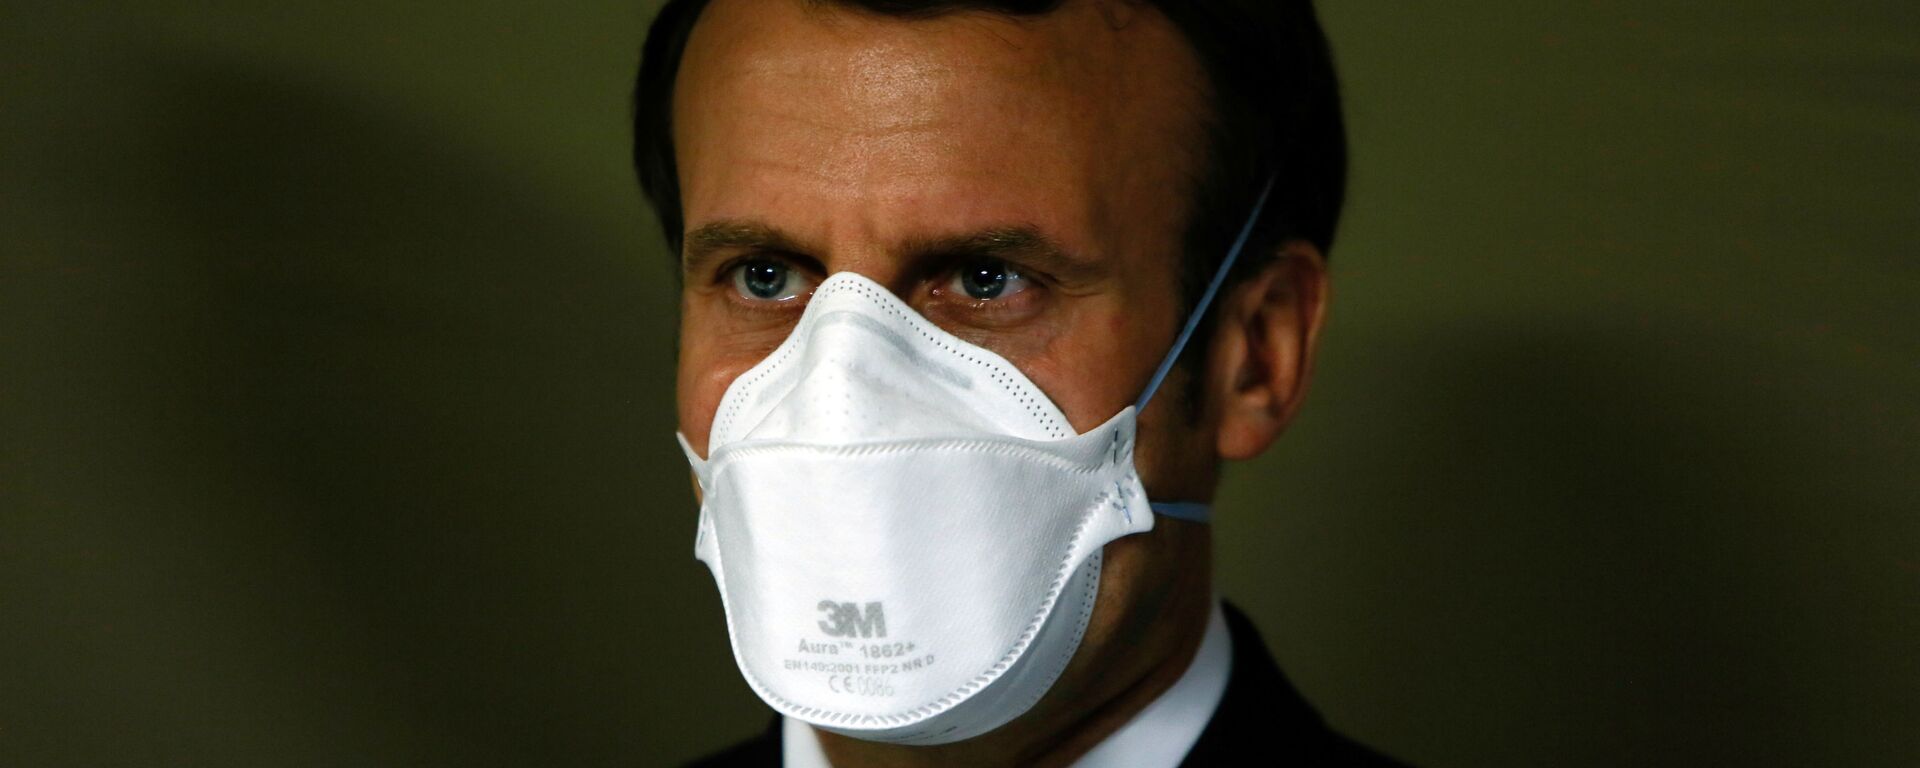 Президент Франции Эммануэль Макрон в медицинской маске - Sputnik Ўзбекистон, 1920, 26.03.2021